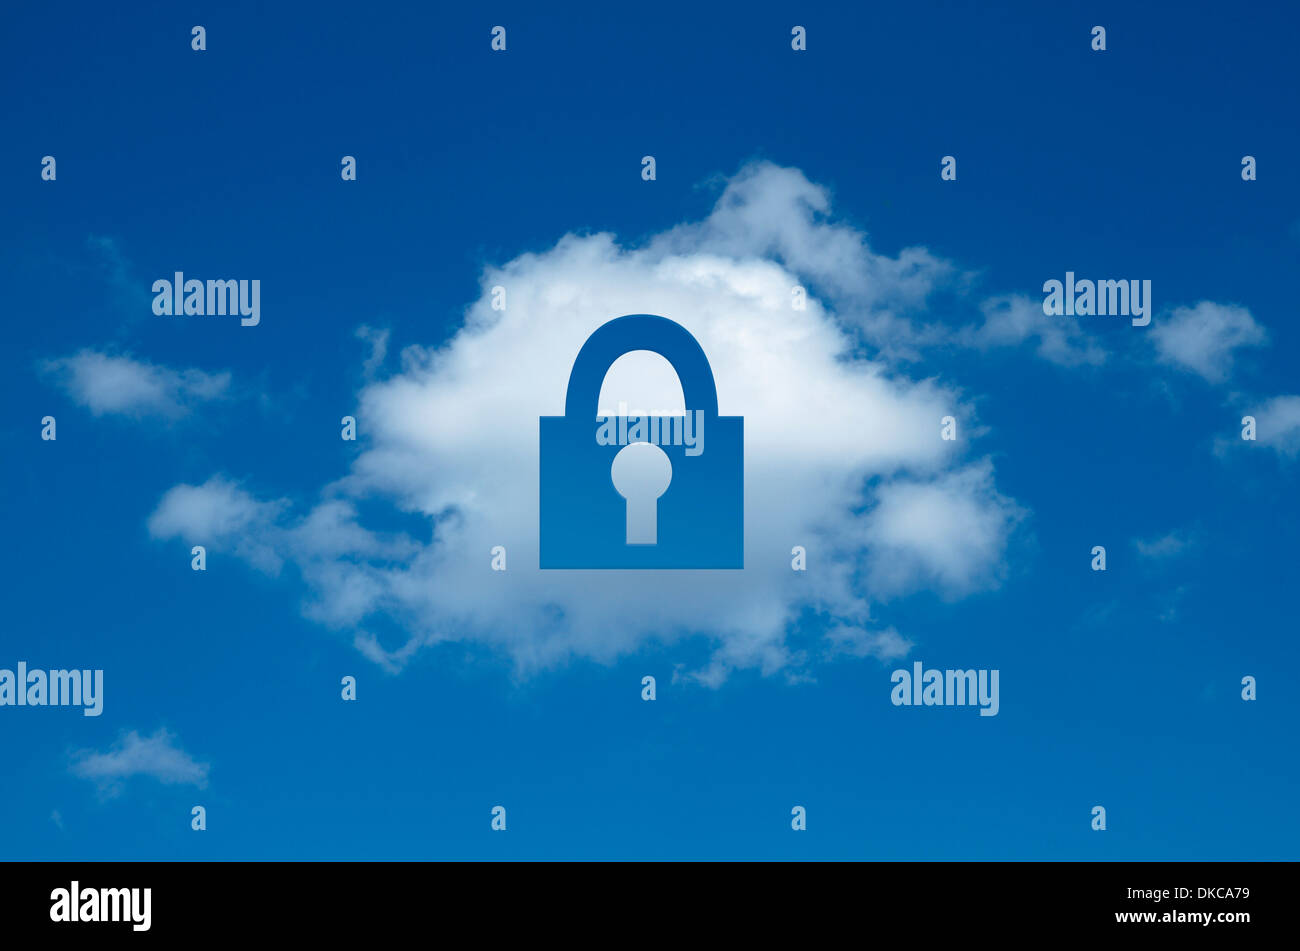 Digital composite of cloud avec découpe forme de cadenas, cloud computing sécurisé Banque D'Images